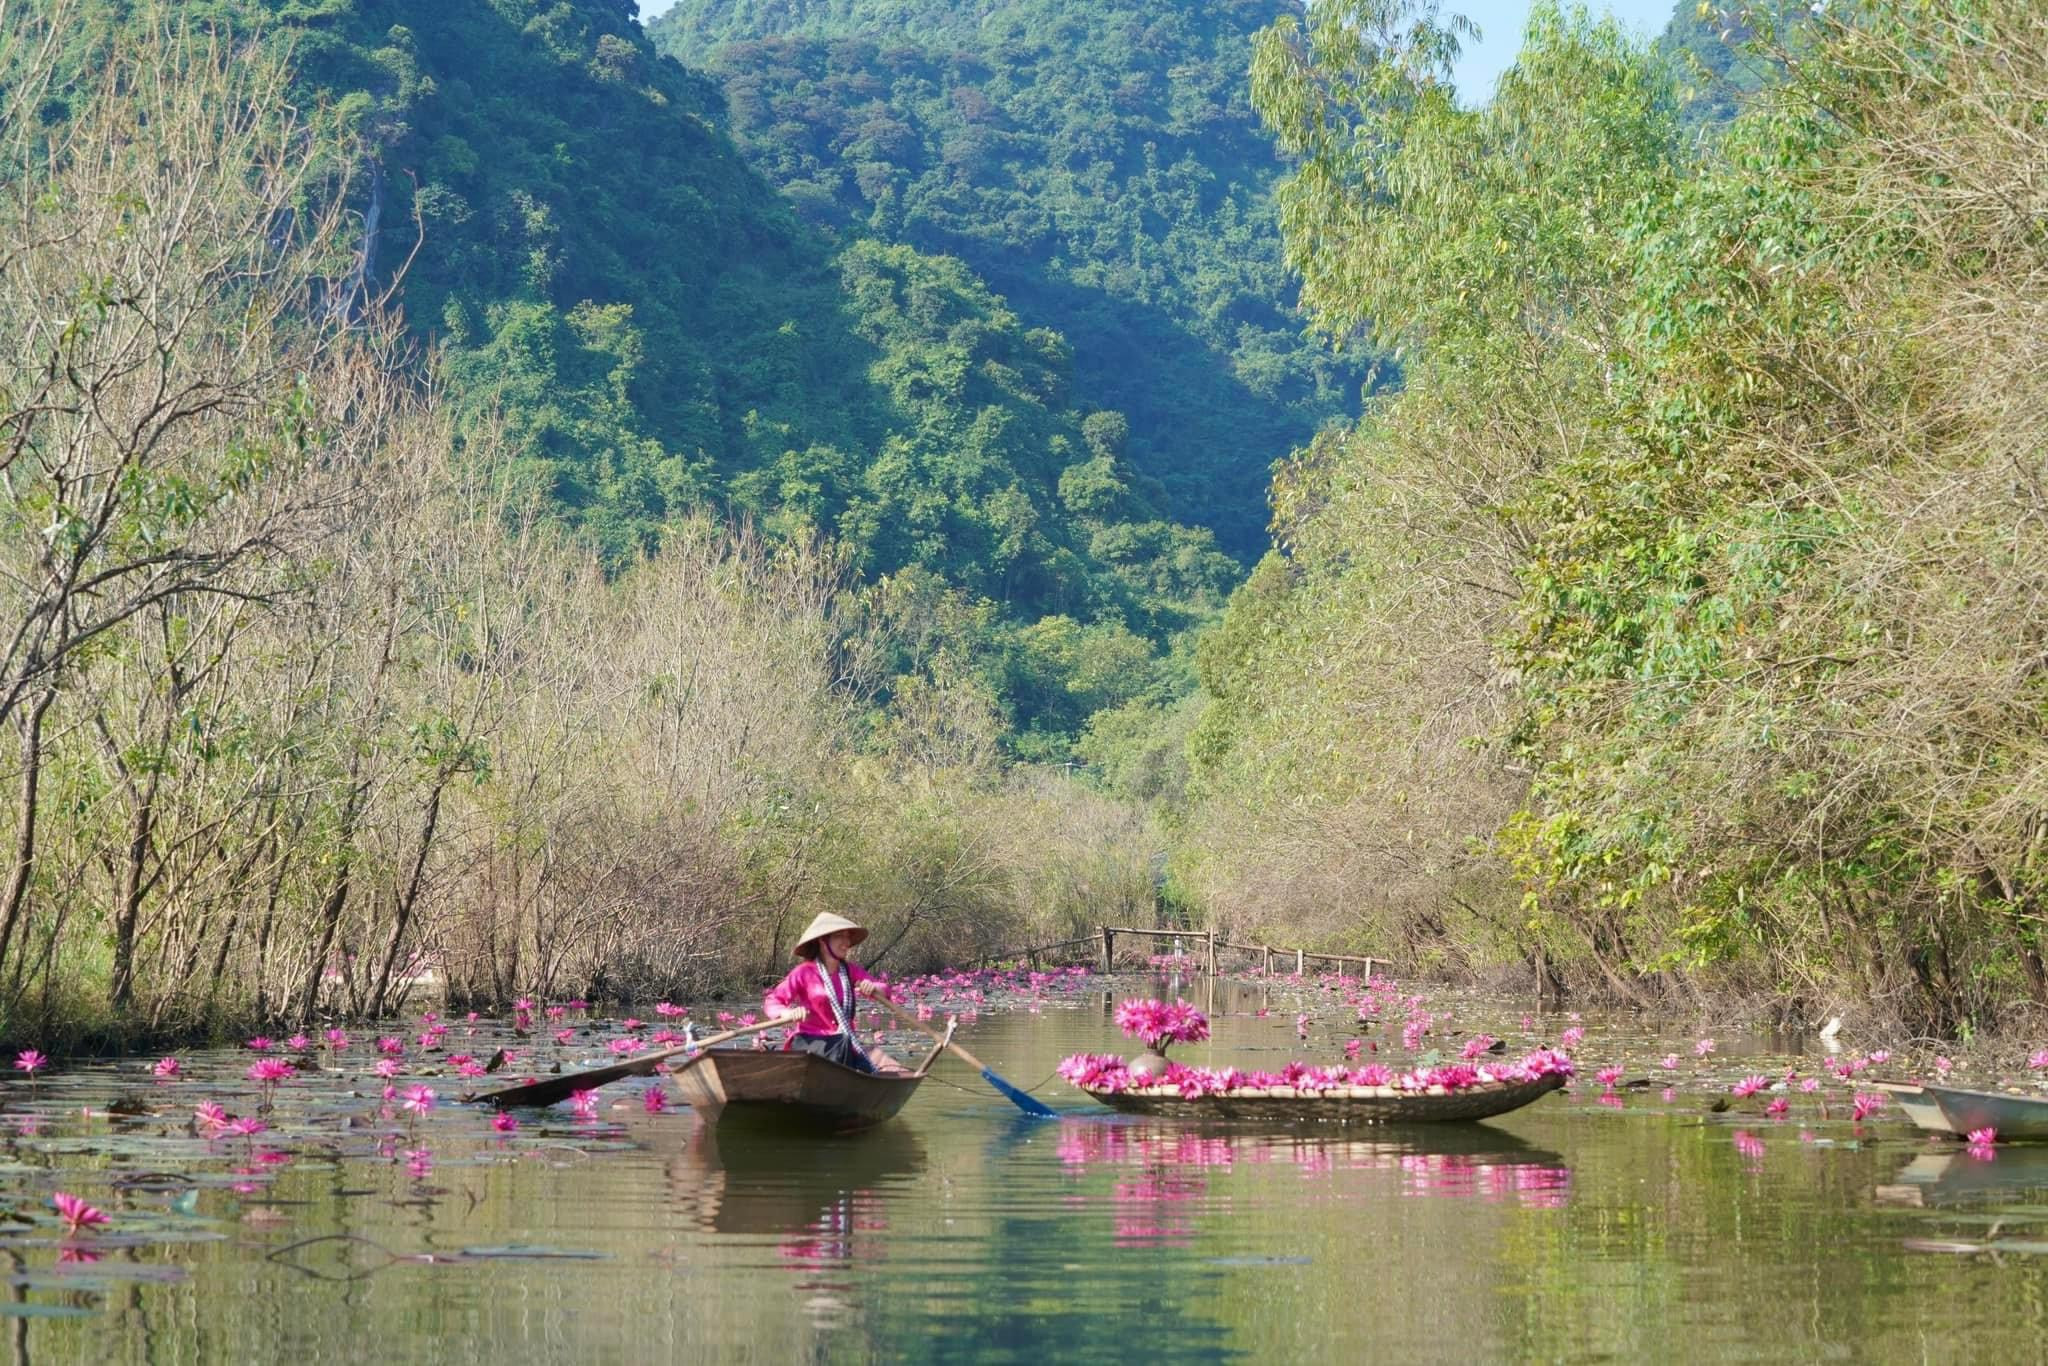 Tới chùa Hương ngắm thiếu nữ rạng ngời bên dòng suối 'nở hoa' - 8